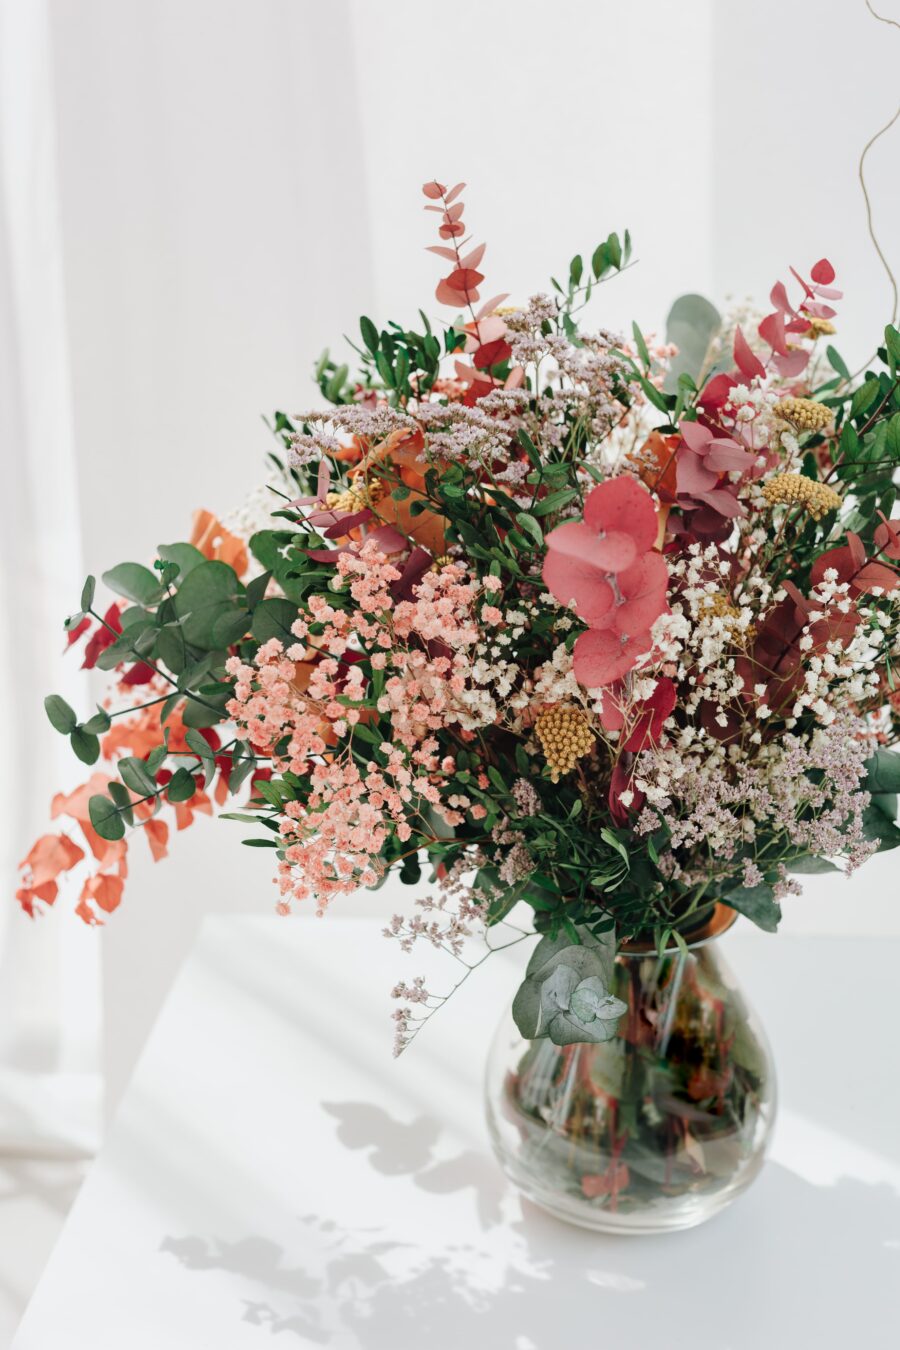 Haz tu pedido de flores preservadas hoy mismo y disfruta de la conveniencia de recibir tus arreglos florales directamente en tu hogar. ¡Añade un toque de frescura y belleza a cualquier espacio con nuestras flores preservadas